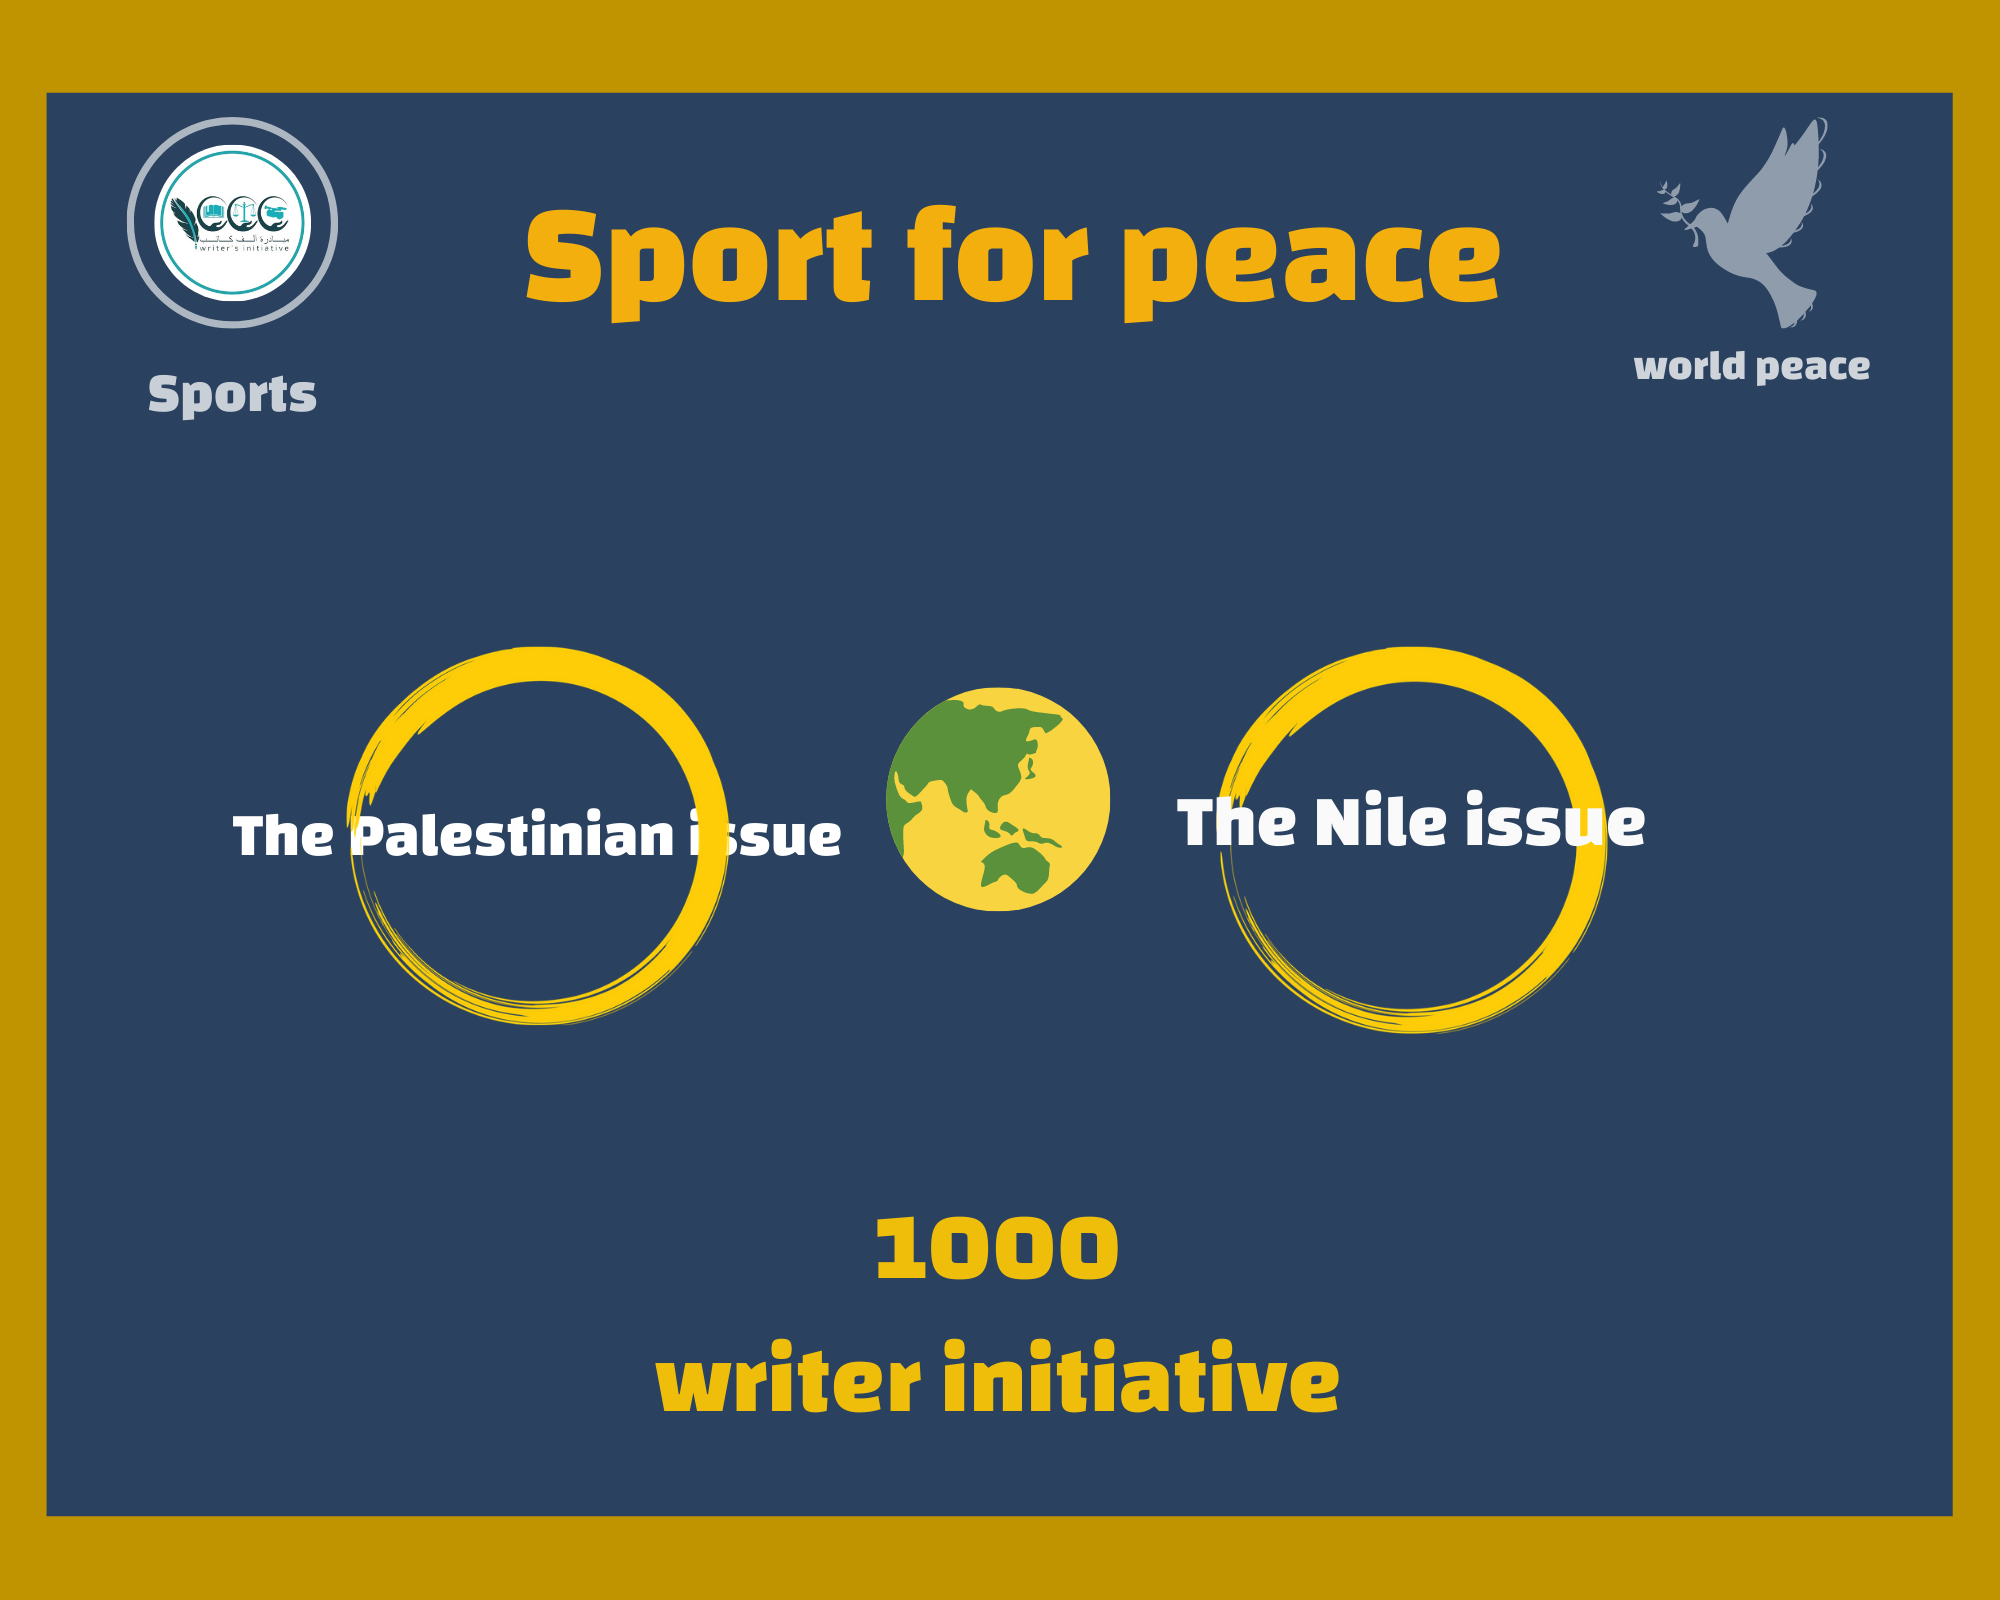 حملة الرياضة من أجل السلام تدعو الأندية والمؤسسات الرياضية حول العالم بدعم قضية النيل والقضية الفلسطينية